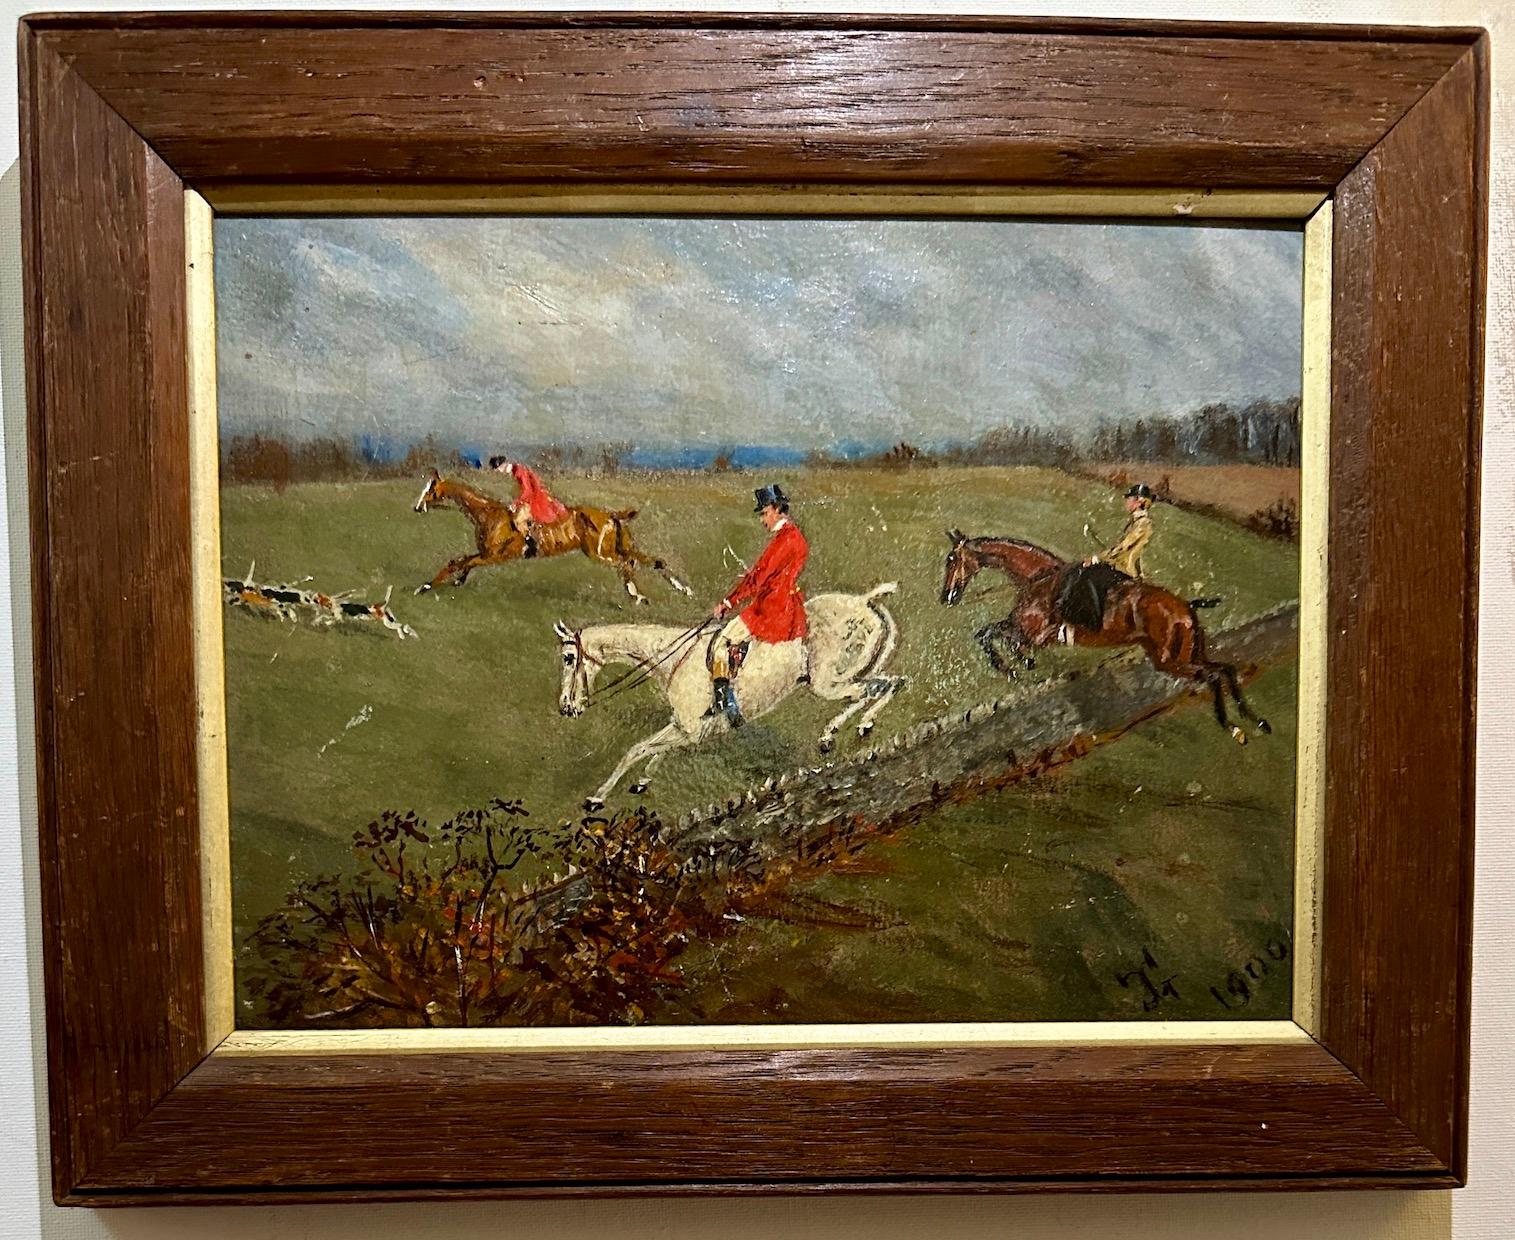 Ancienne scène de chasse de renard anglaise avec un chasseur sautant avec des chiens dans un champ